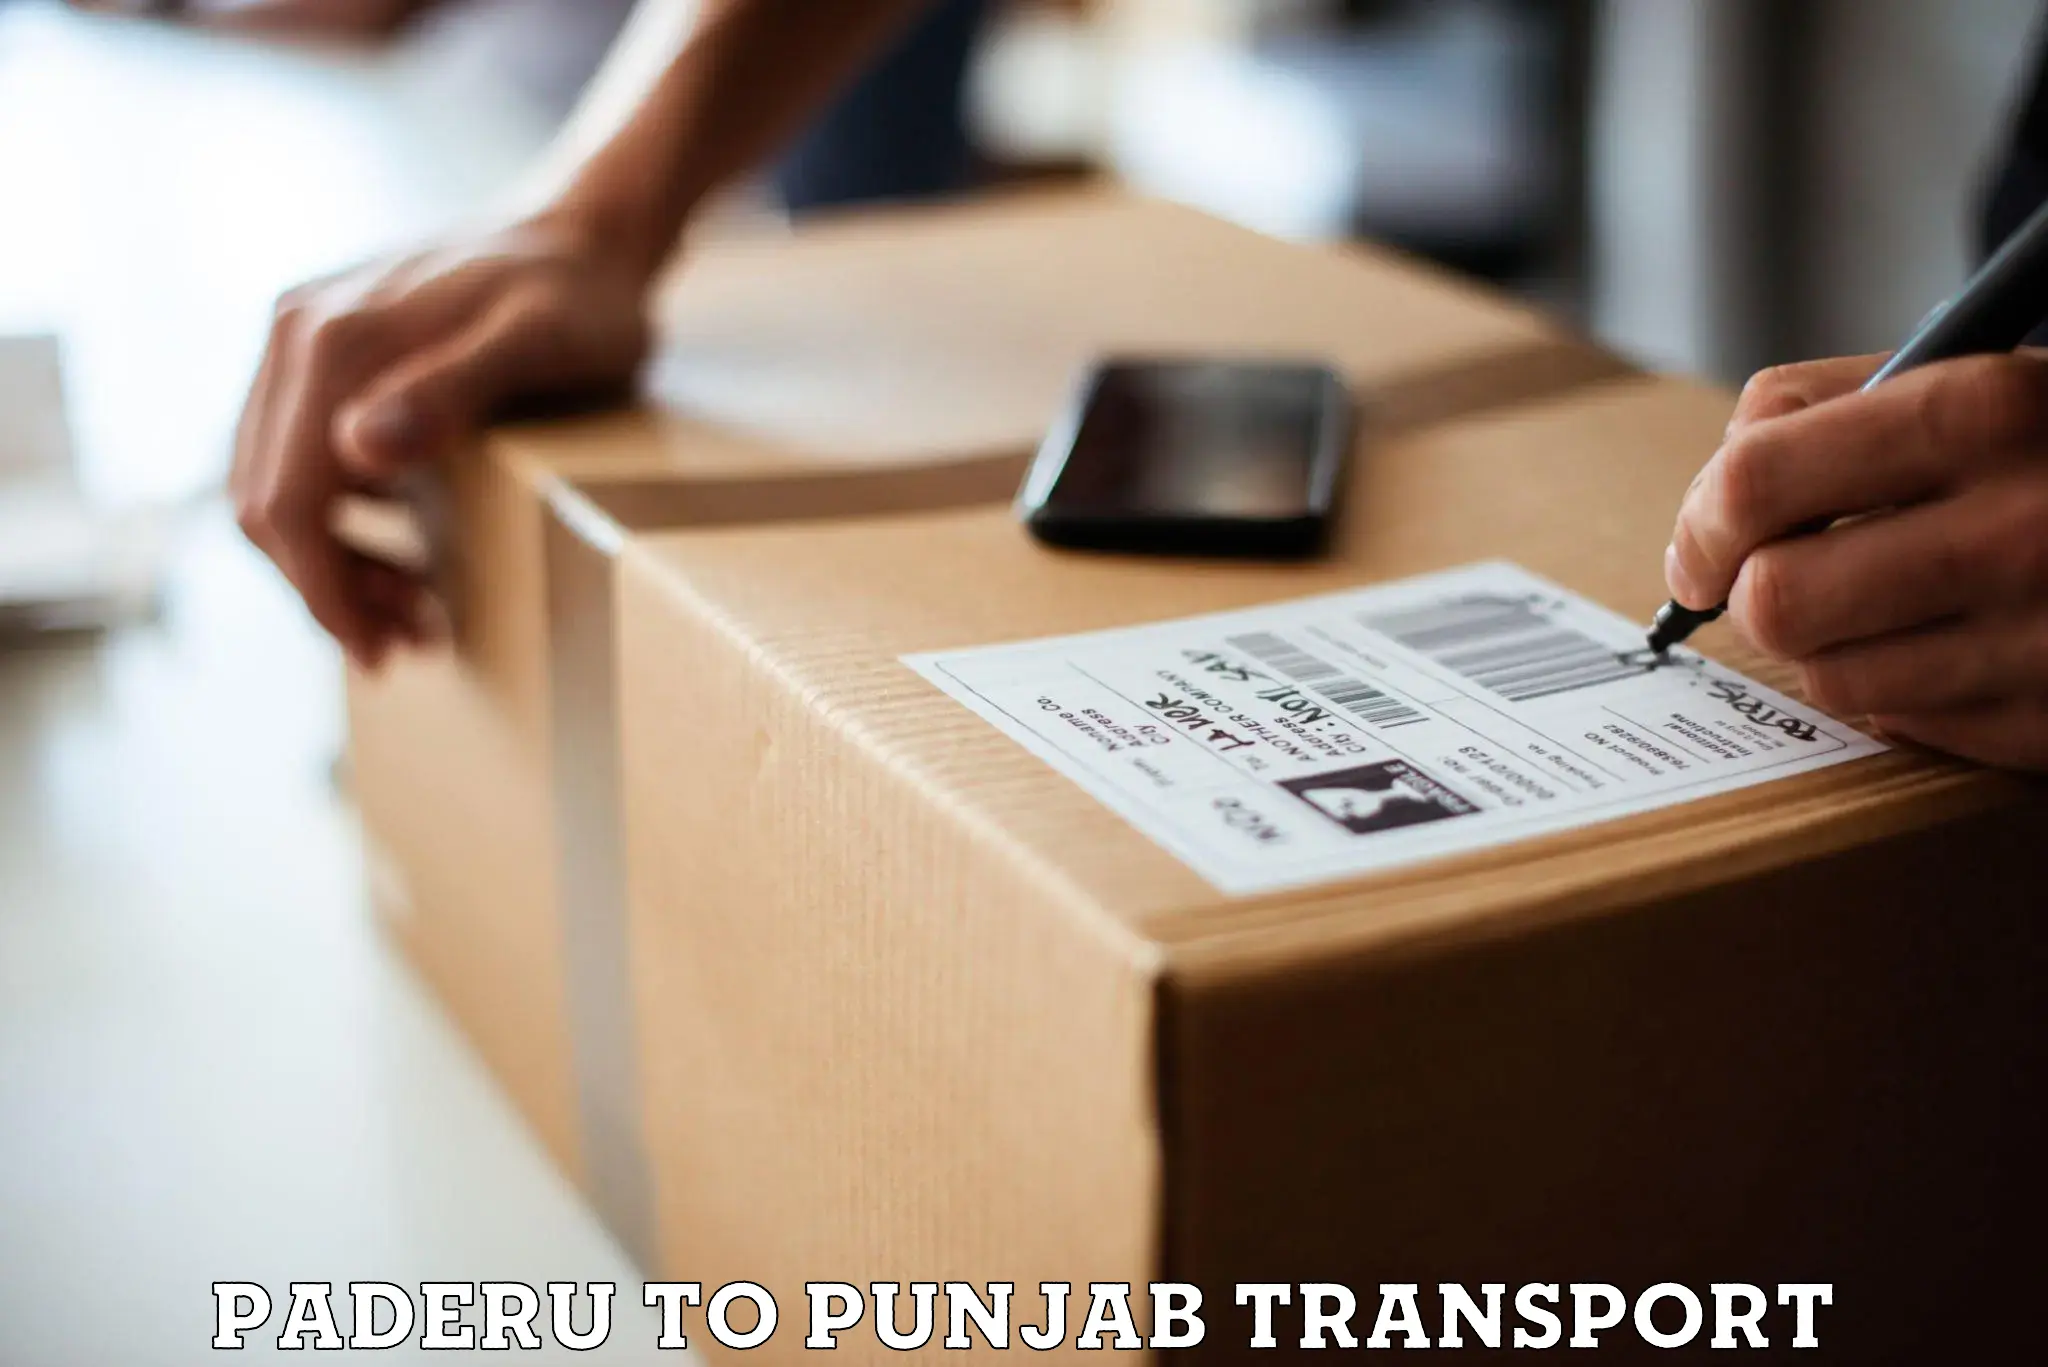 Pick up transport service Paderu to Punjab